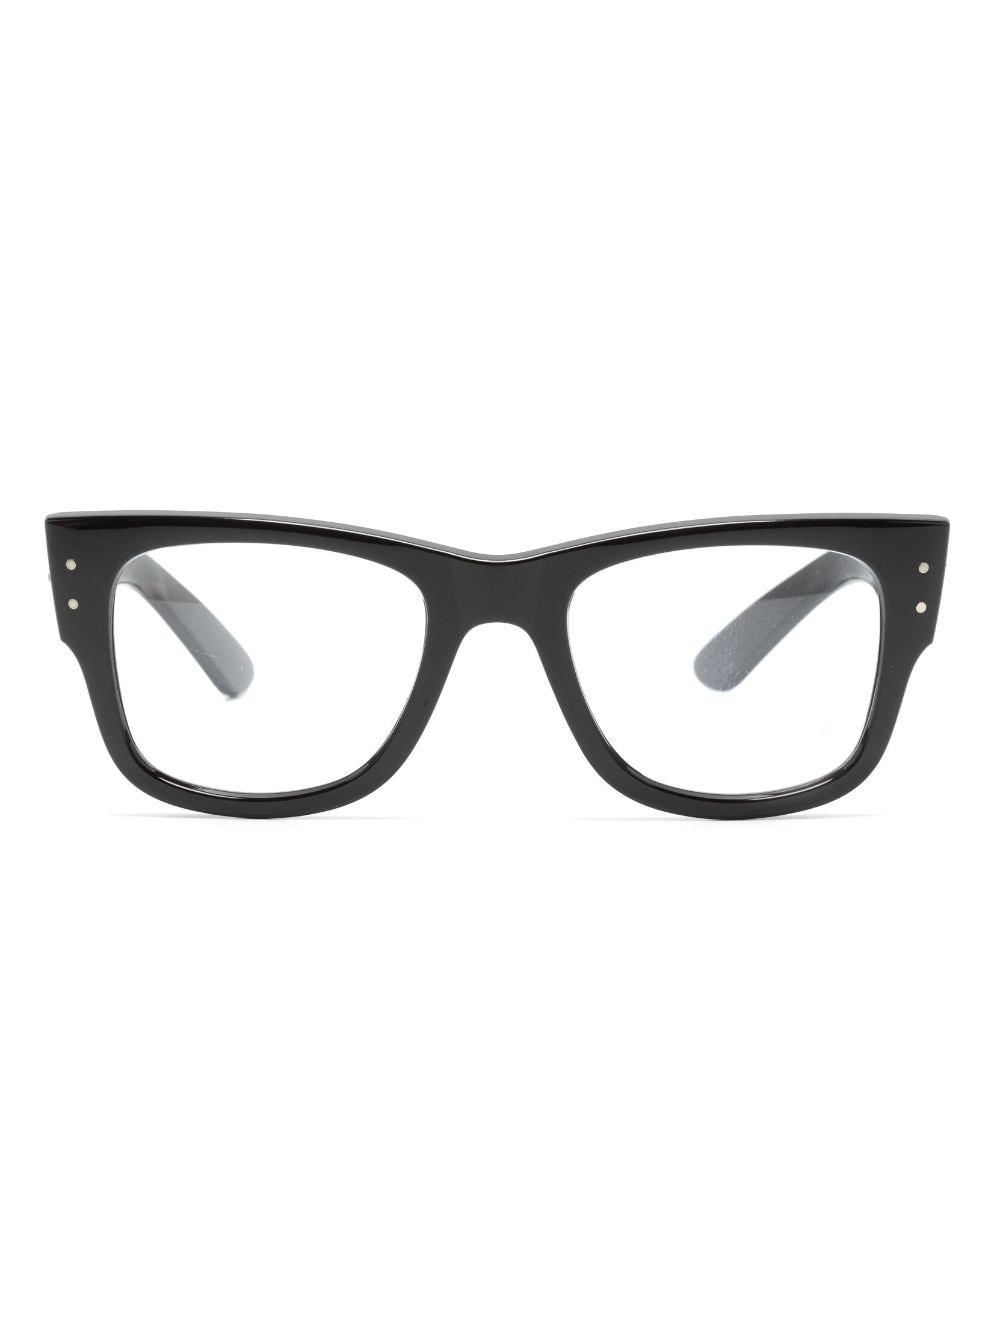 rectangle-frame tortoiseshell-effect glasses